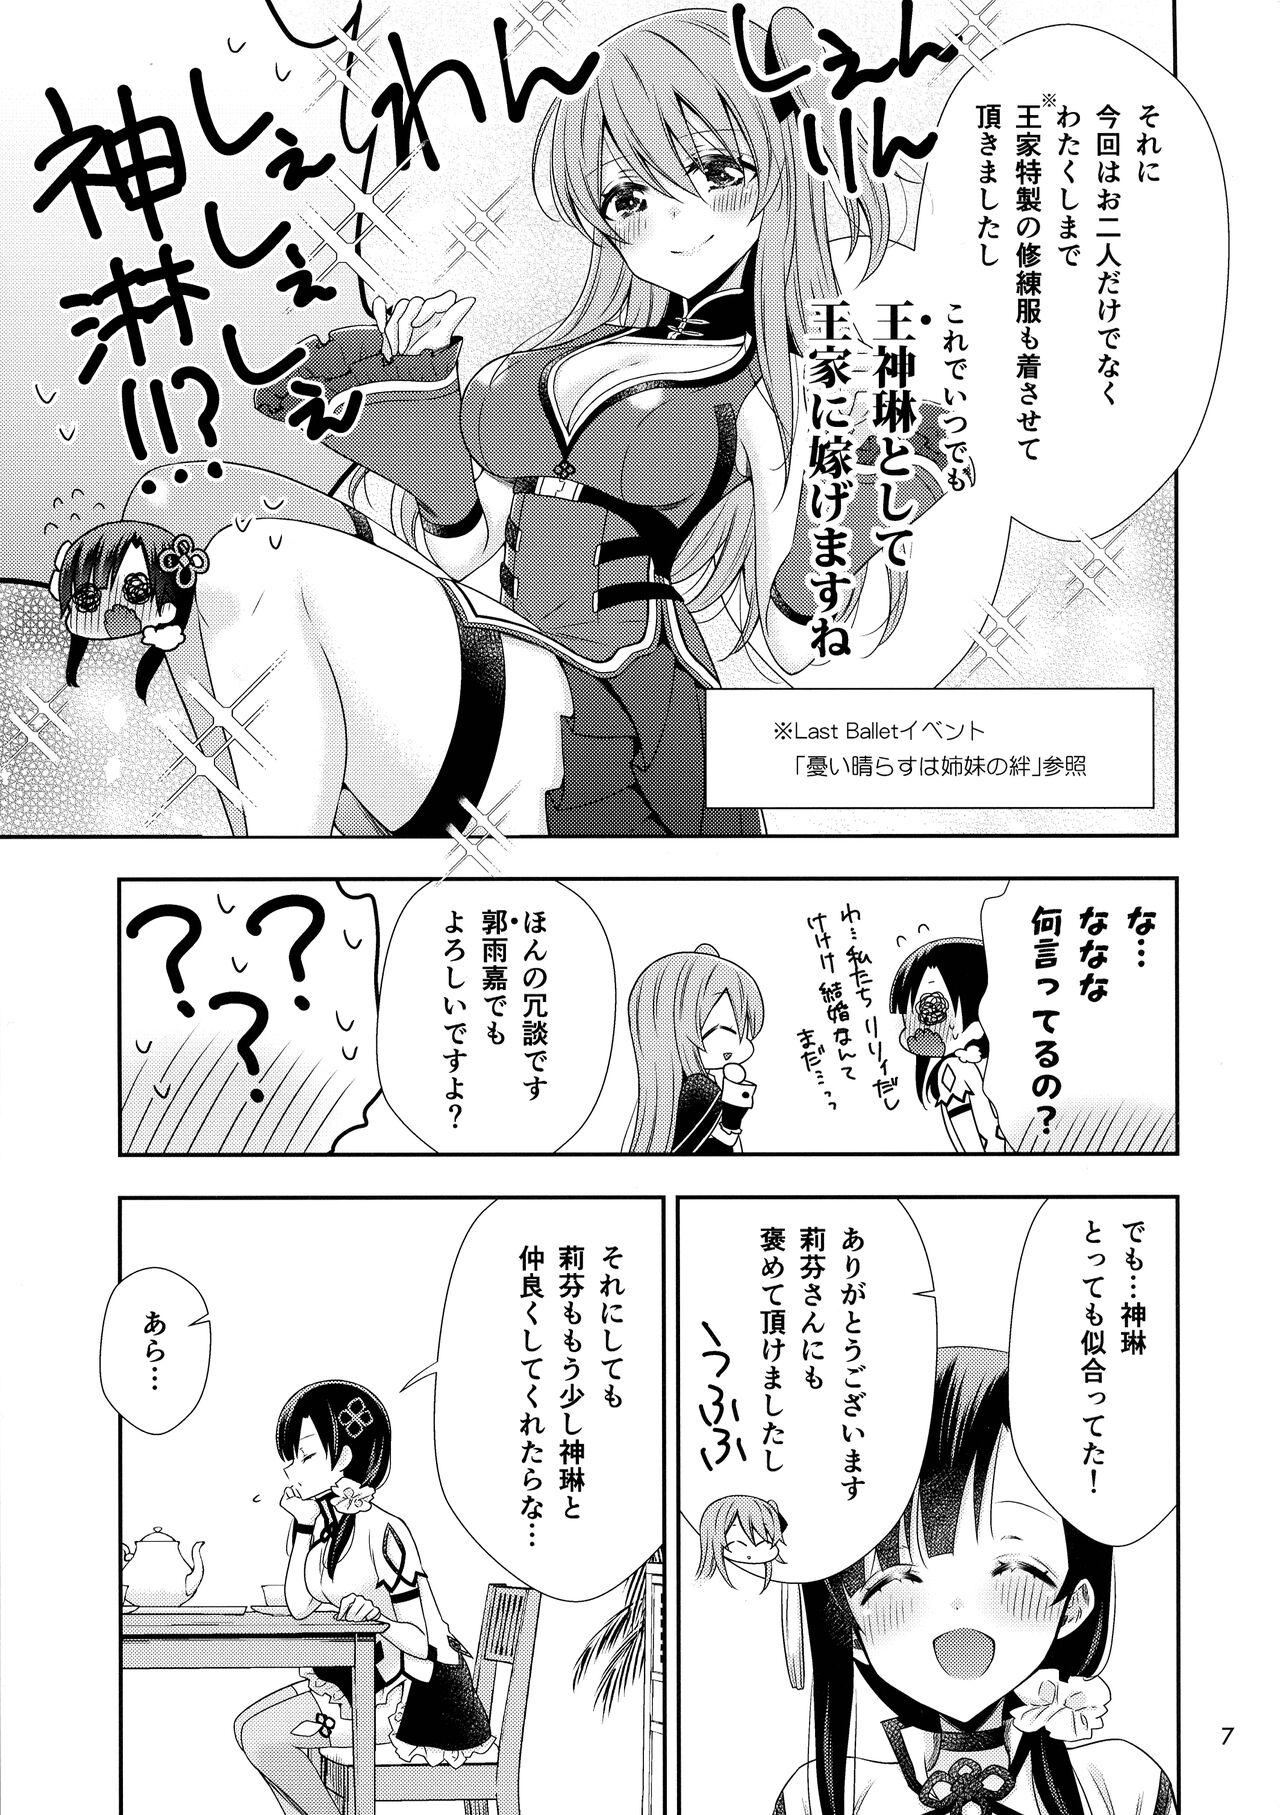 Loira Kami Rin ga ame Yoshimi ni Yaki Mochi o Yaku Hanashi - Assault lily Facebook - Page 7